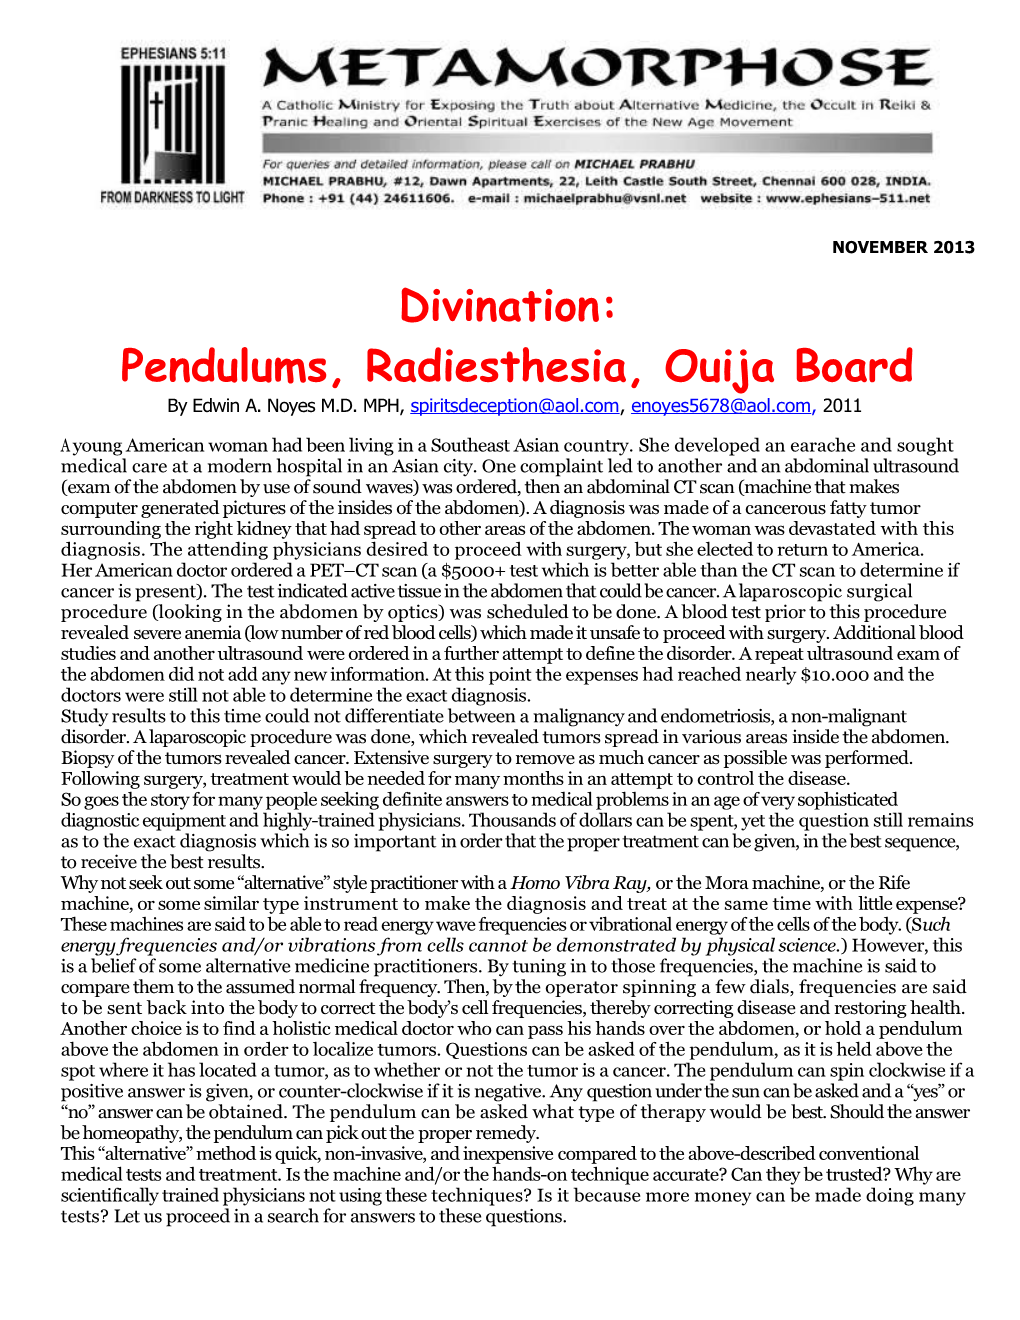 Pendulums, Radiesthesia, Ouija Board